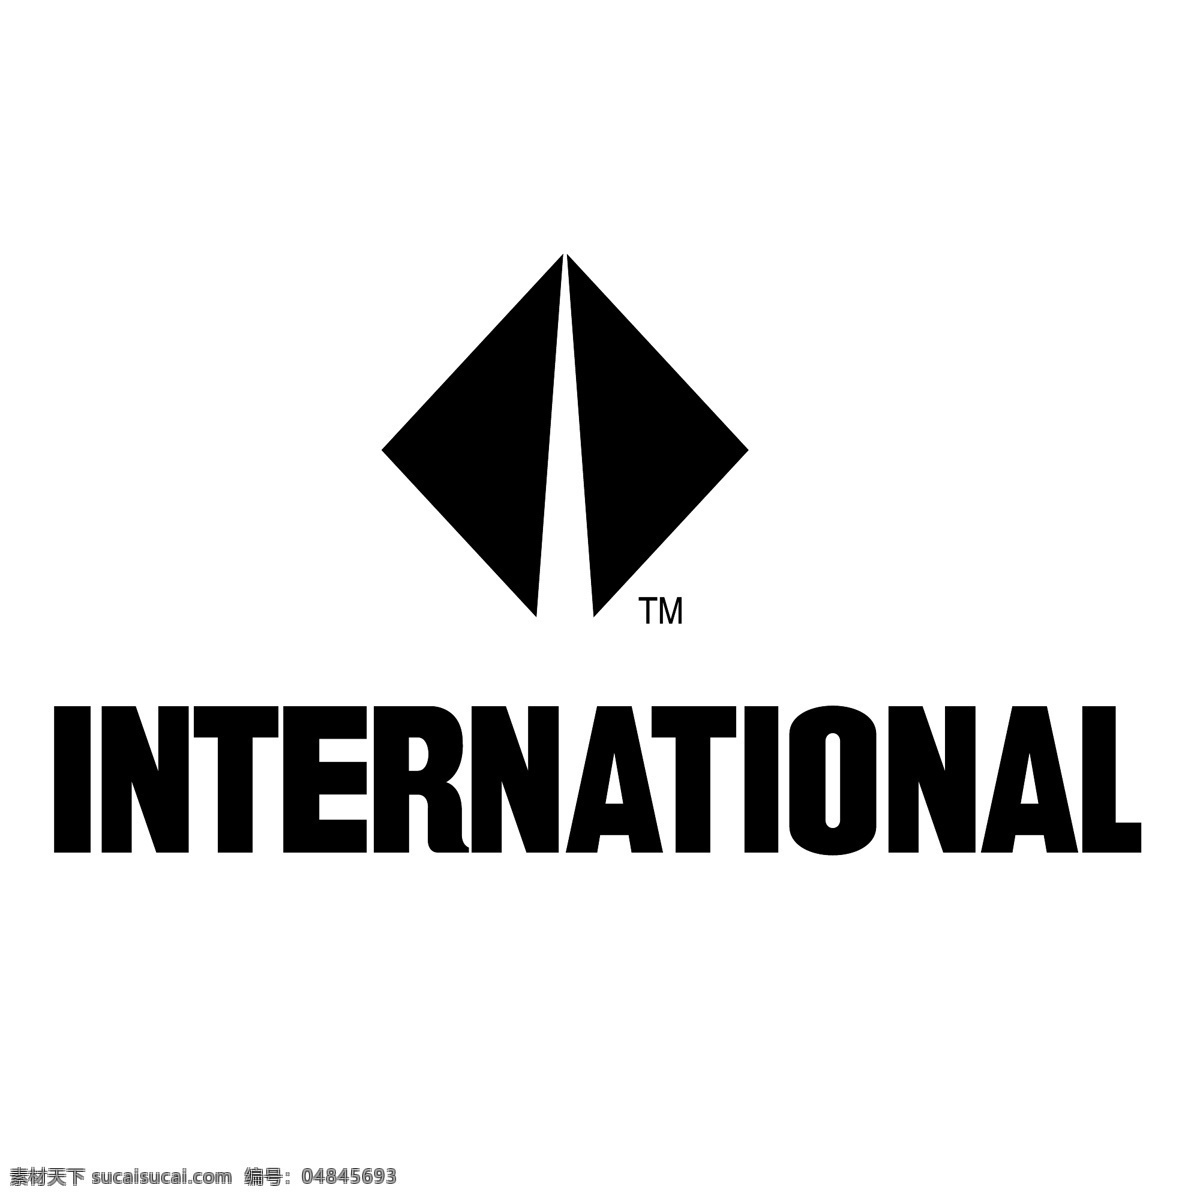 国际5 标志 国际狮子会 国际 阿斯特拉 矢量 新闻 泽普 特 队 国际地图符号 刑事 法院 国际符号 矢量图 建筑家居